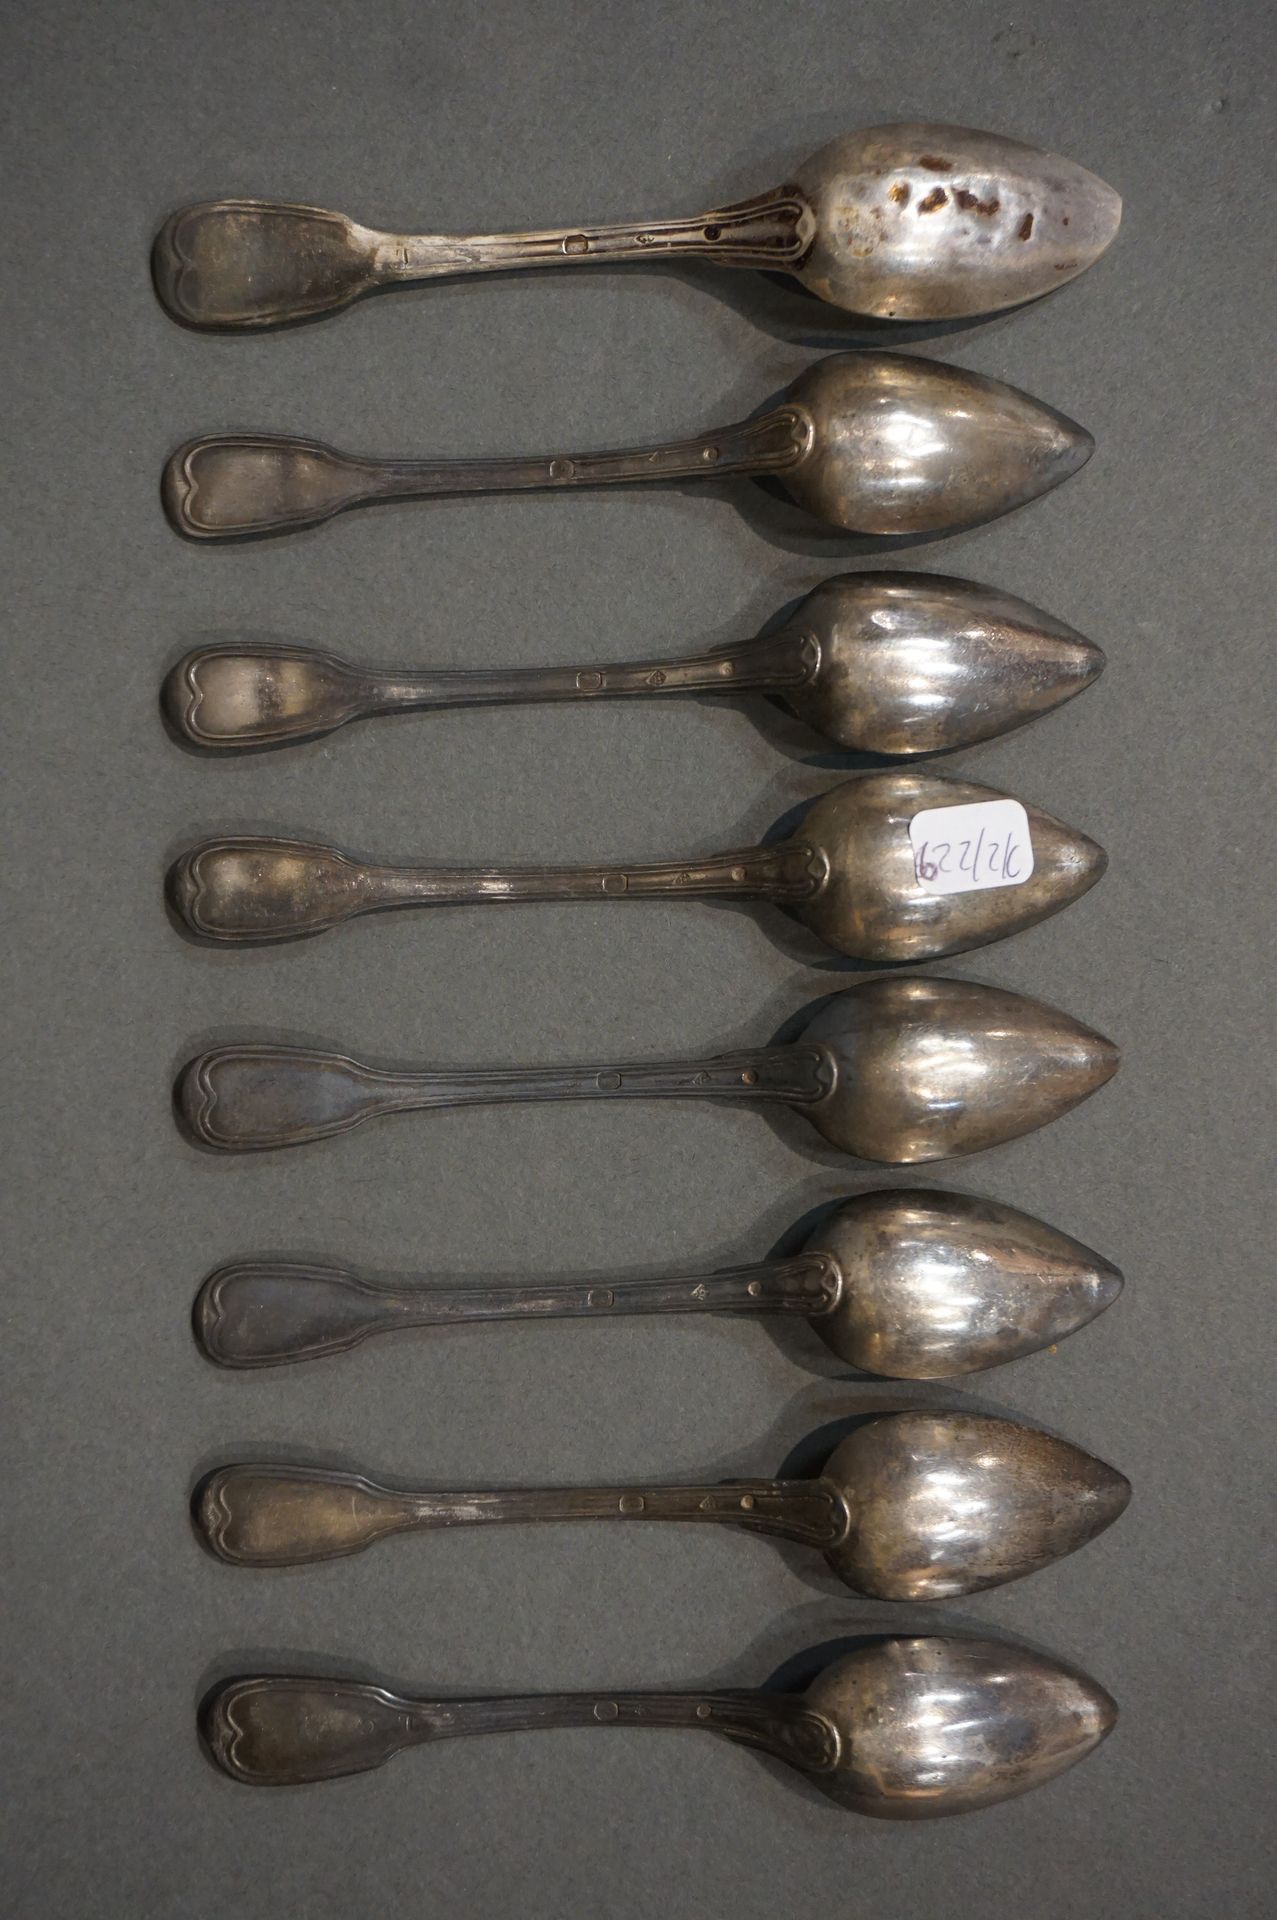 Cuillères Ocho pequeñas cucharas de plata de contorno (Peso total: 159grs)